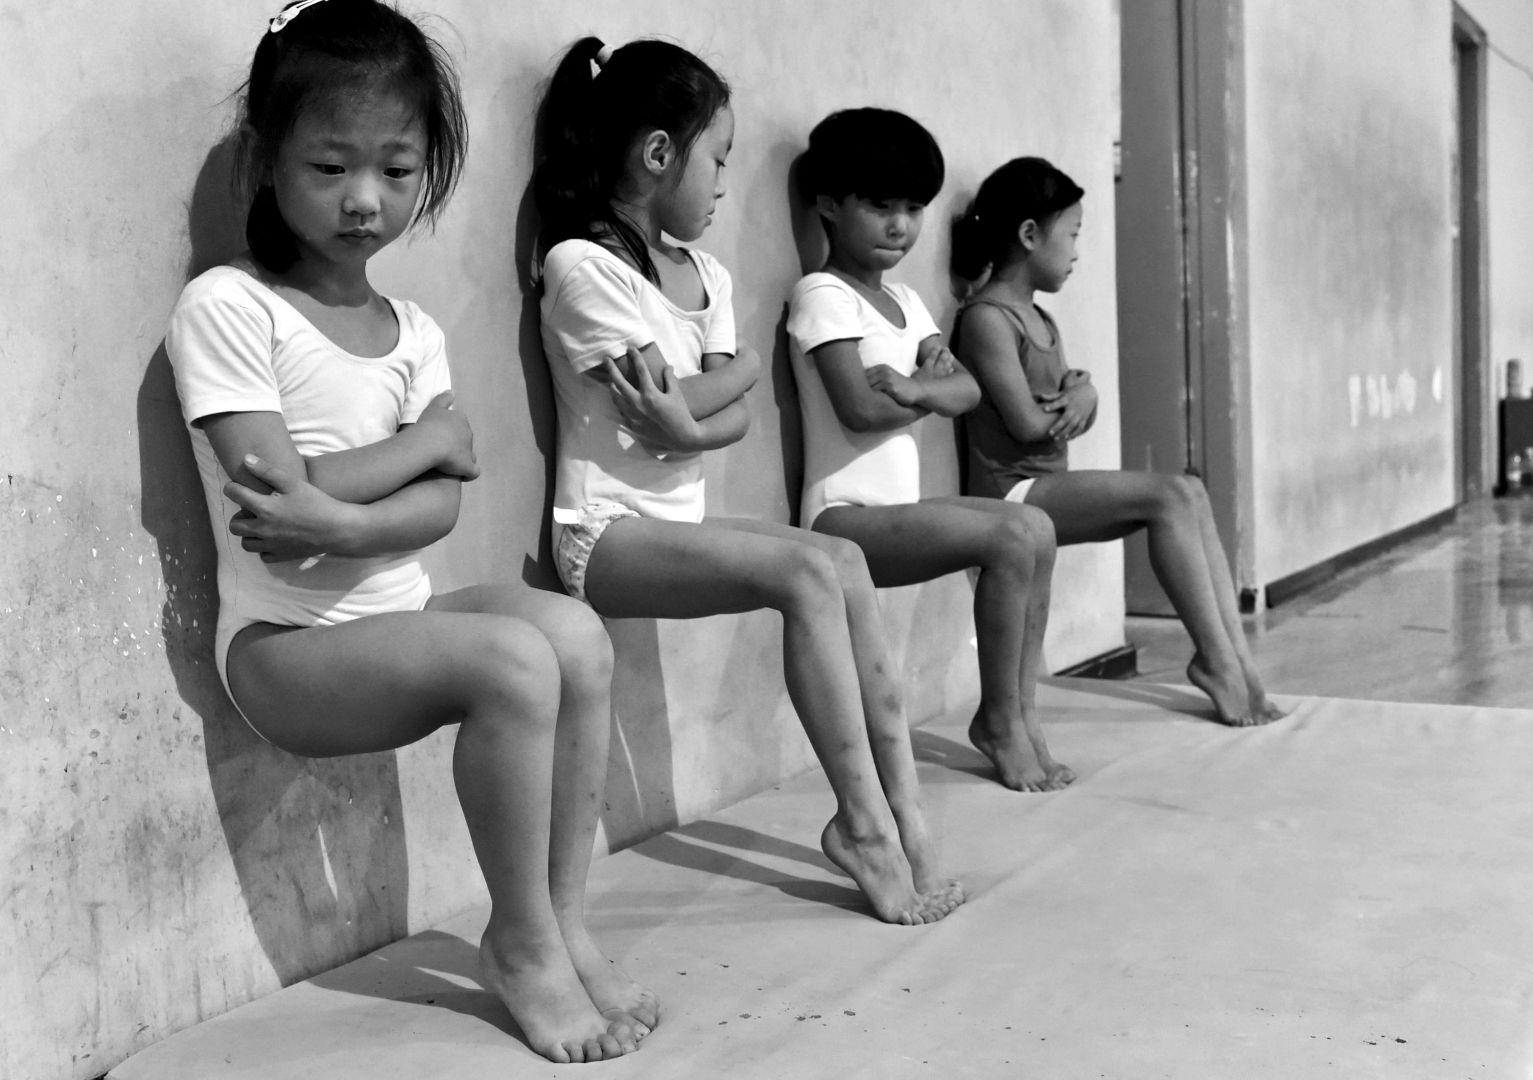 Sweat Makes Champions, Wang Tiejun, China, The World Press Photo Contest